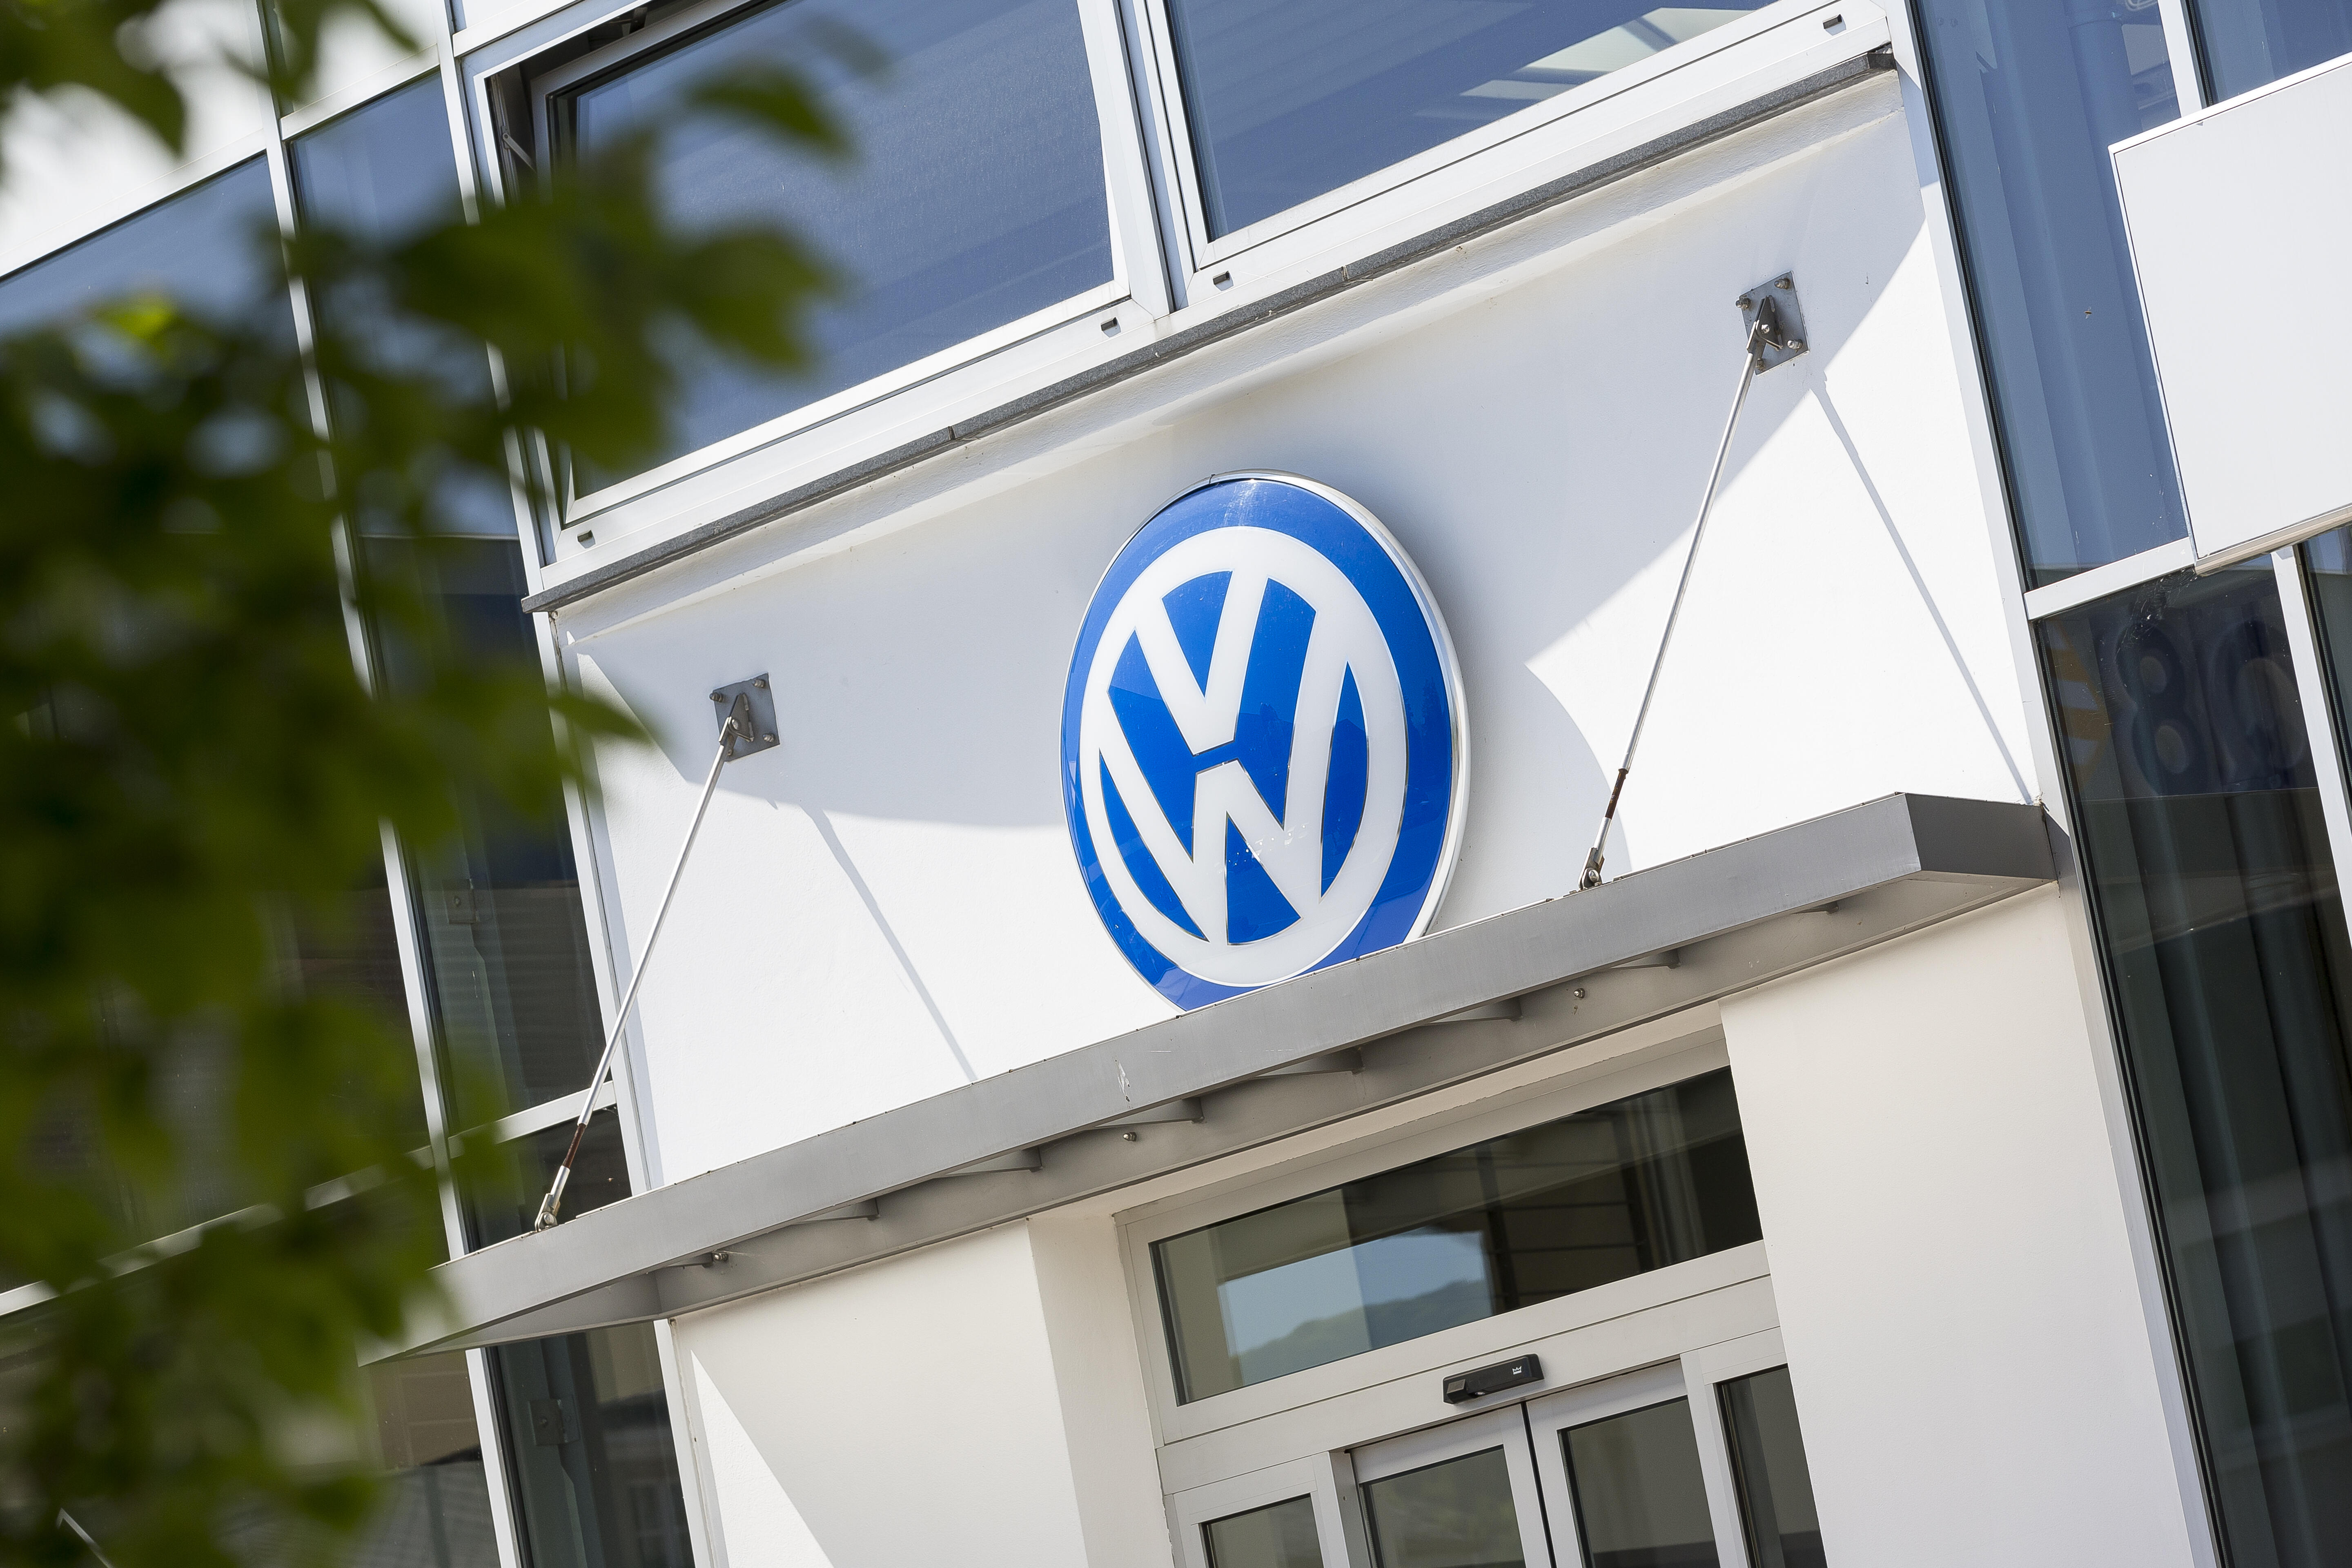 Volkswagen - cache moyeu dynamique pour roue en alliage léger